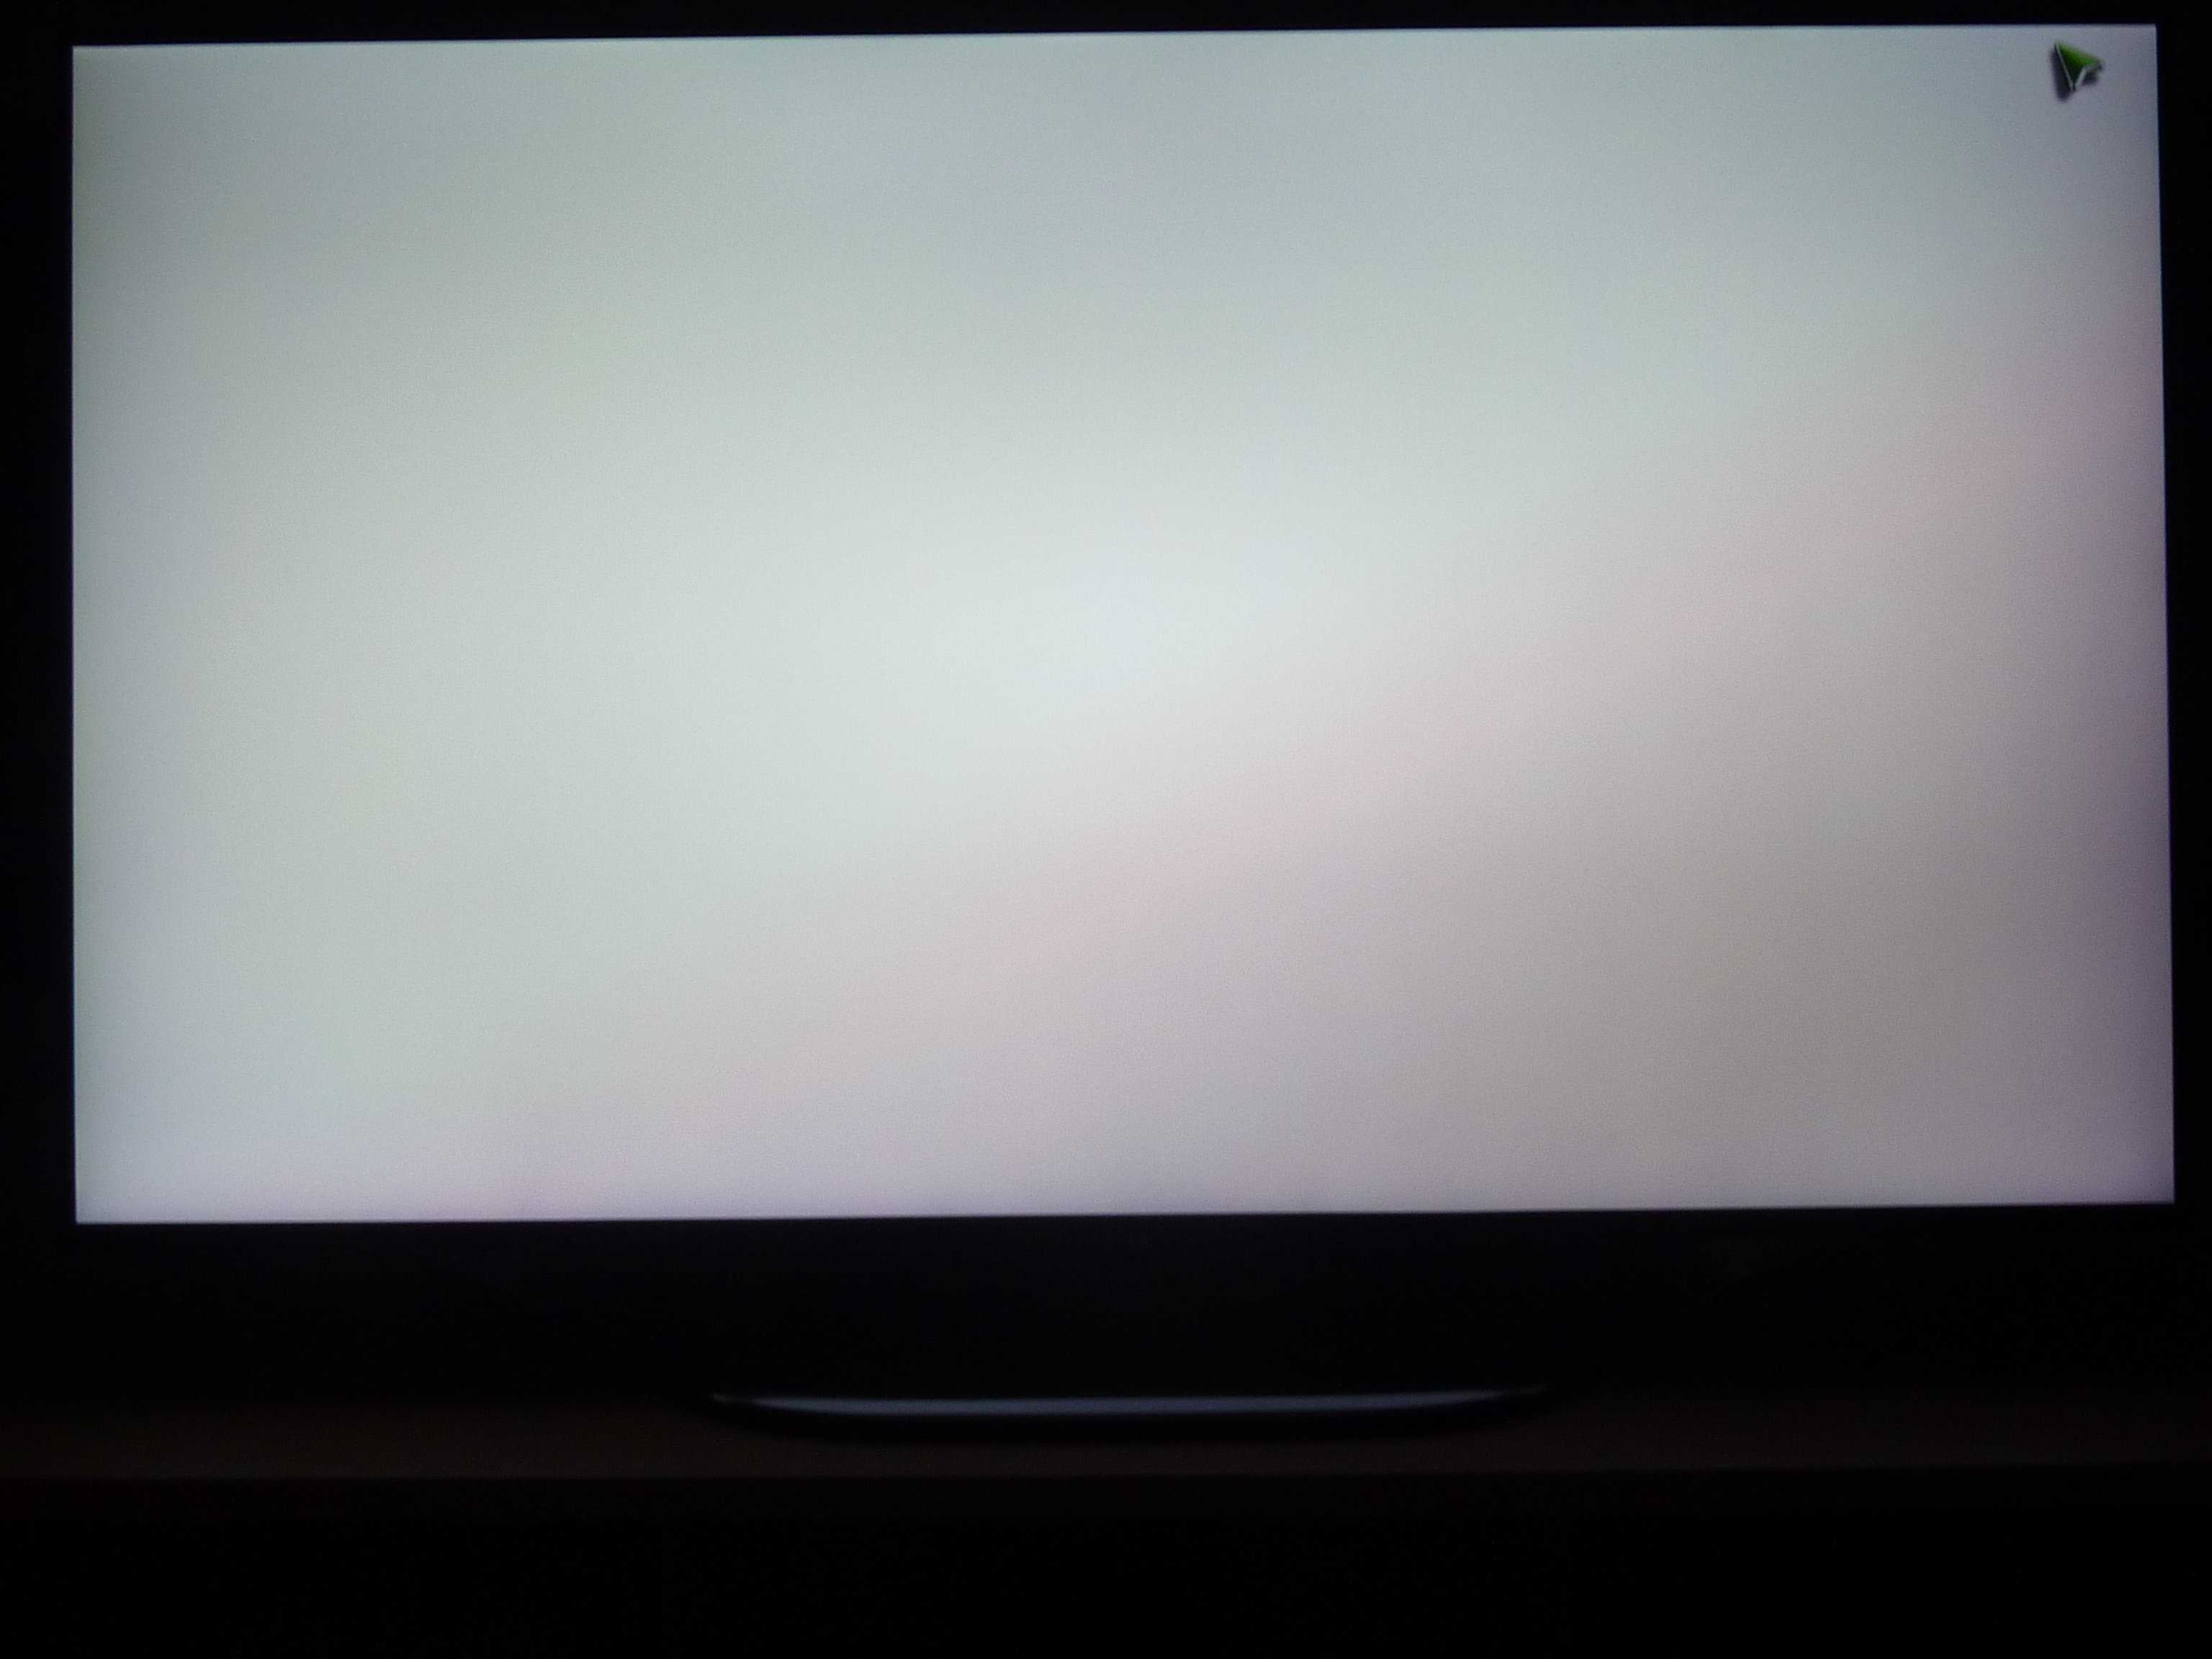 Желтый край экран. LG 6000 серый экран. Тёмные пятна на экране телевизора. Неравномерная подсветка монитора. Засветка экрана телевизора.